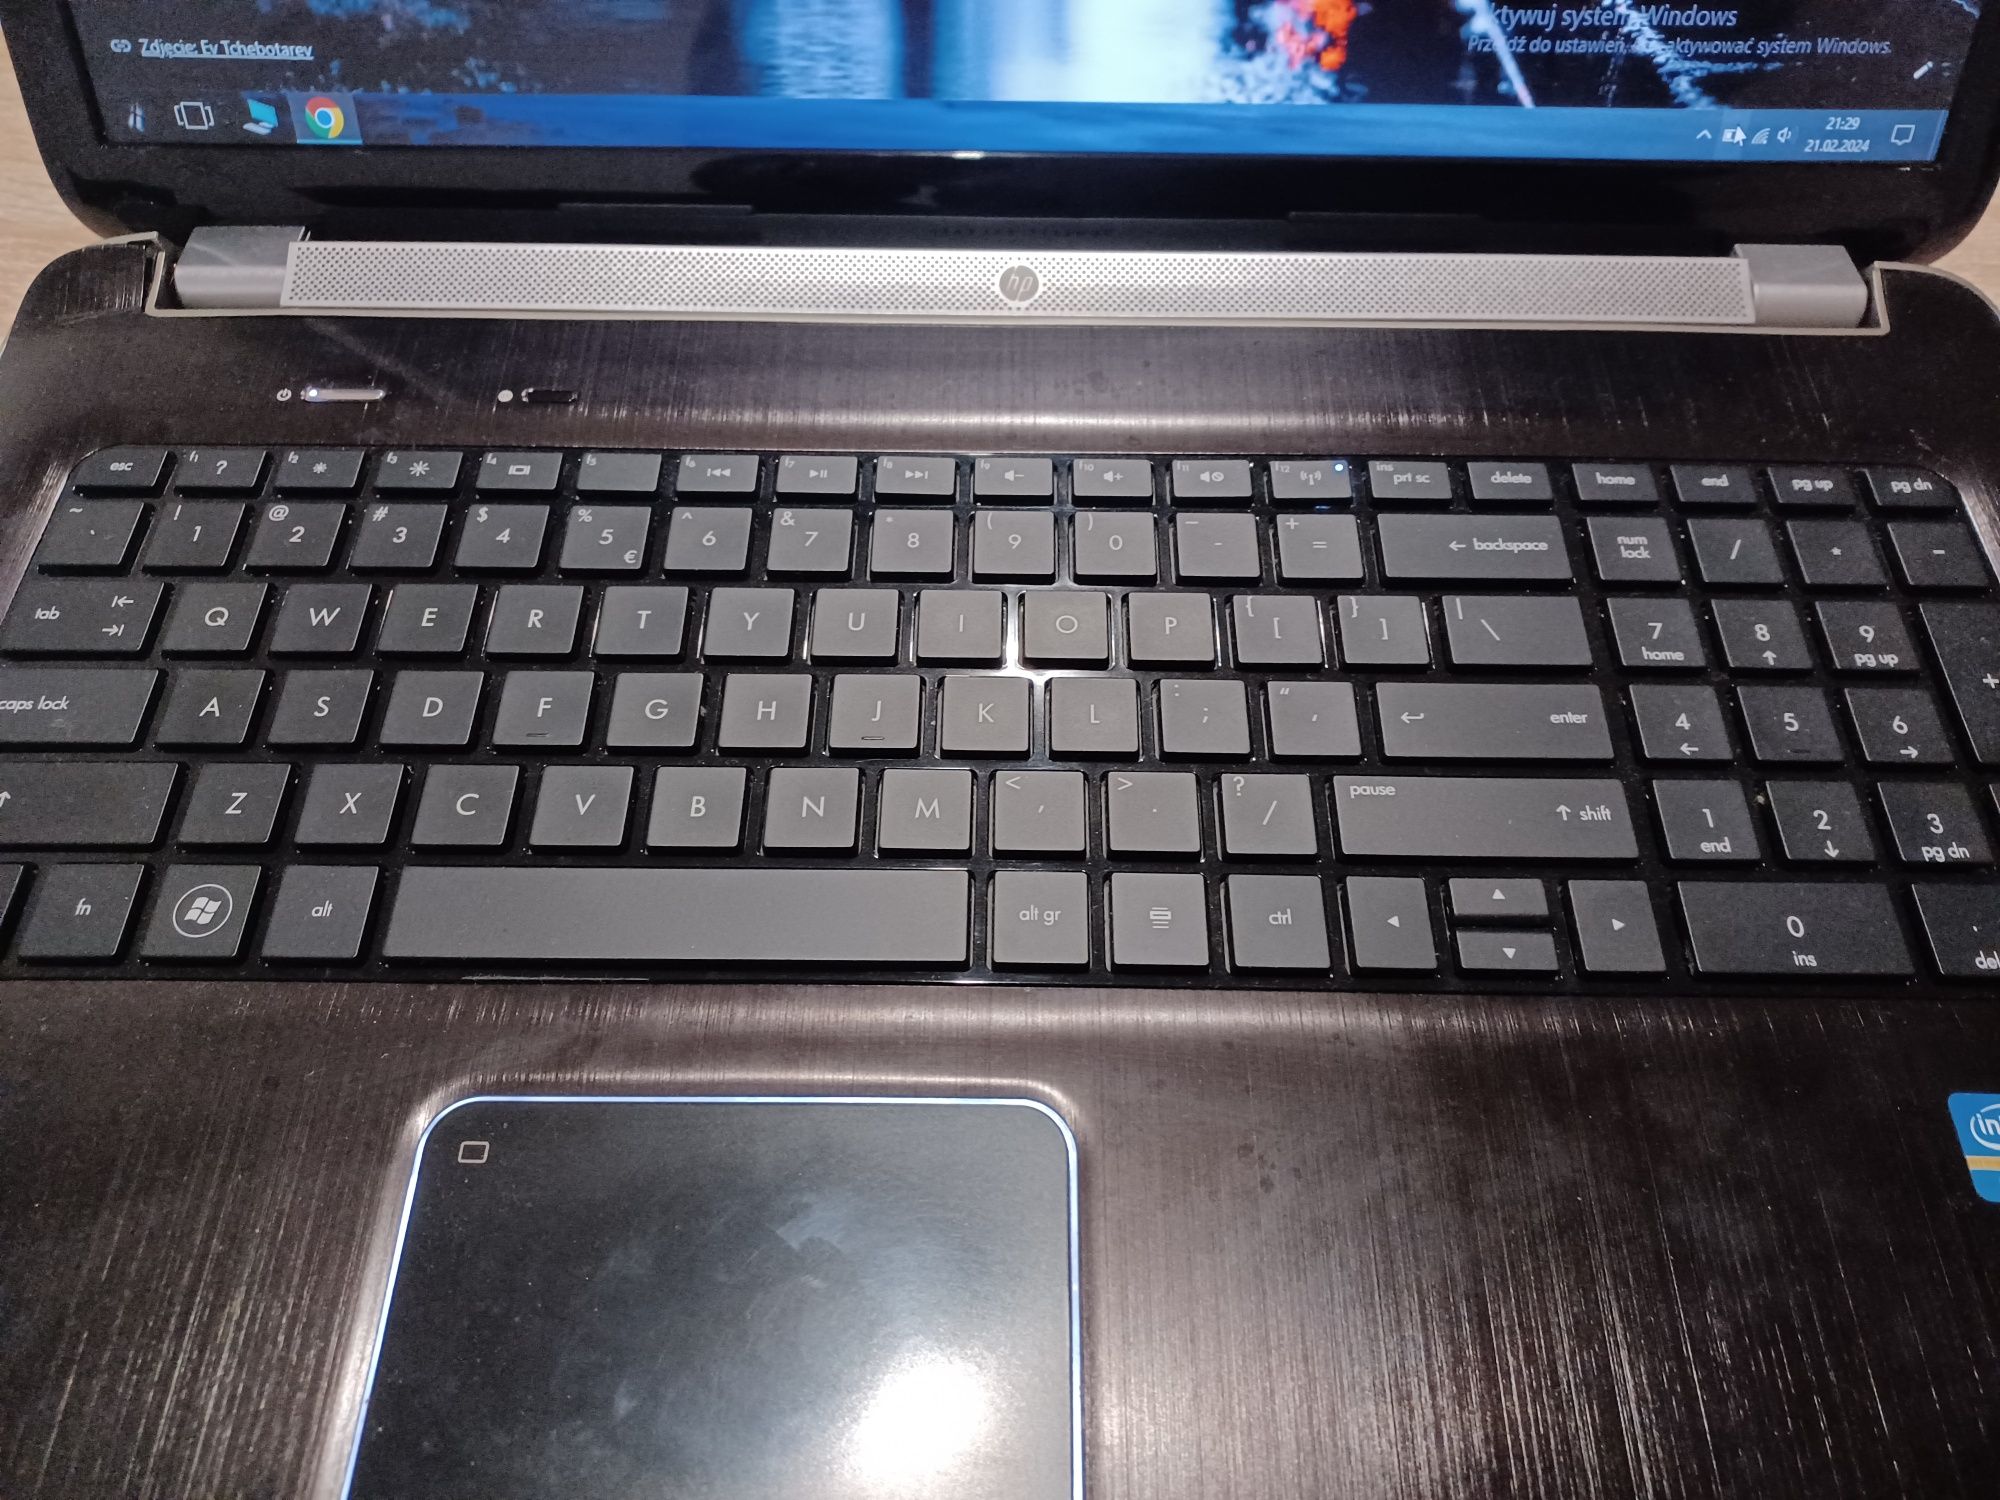 Laptop HP 17 cali nowy dysk ssd